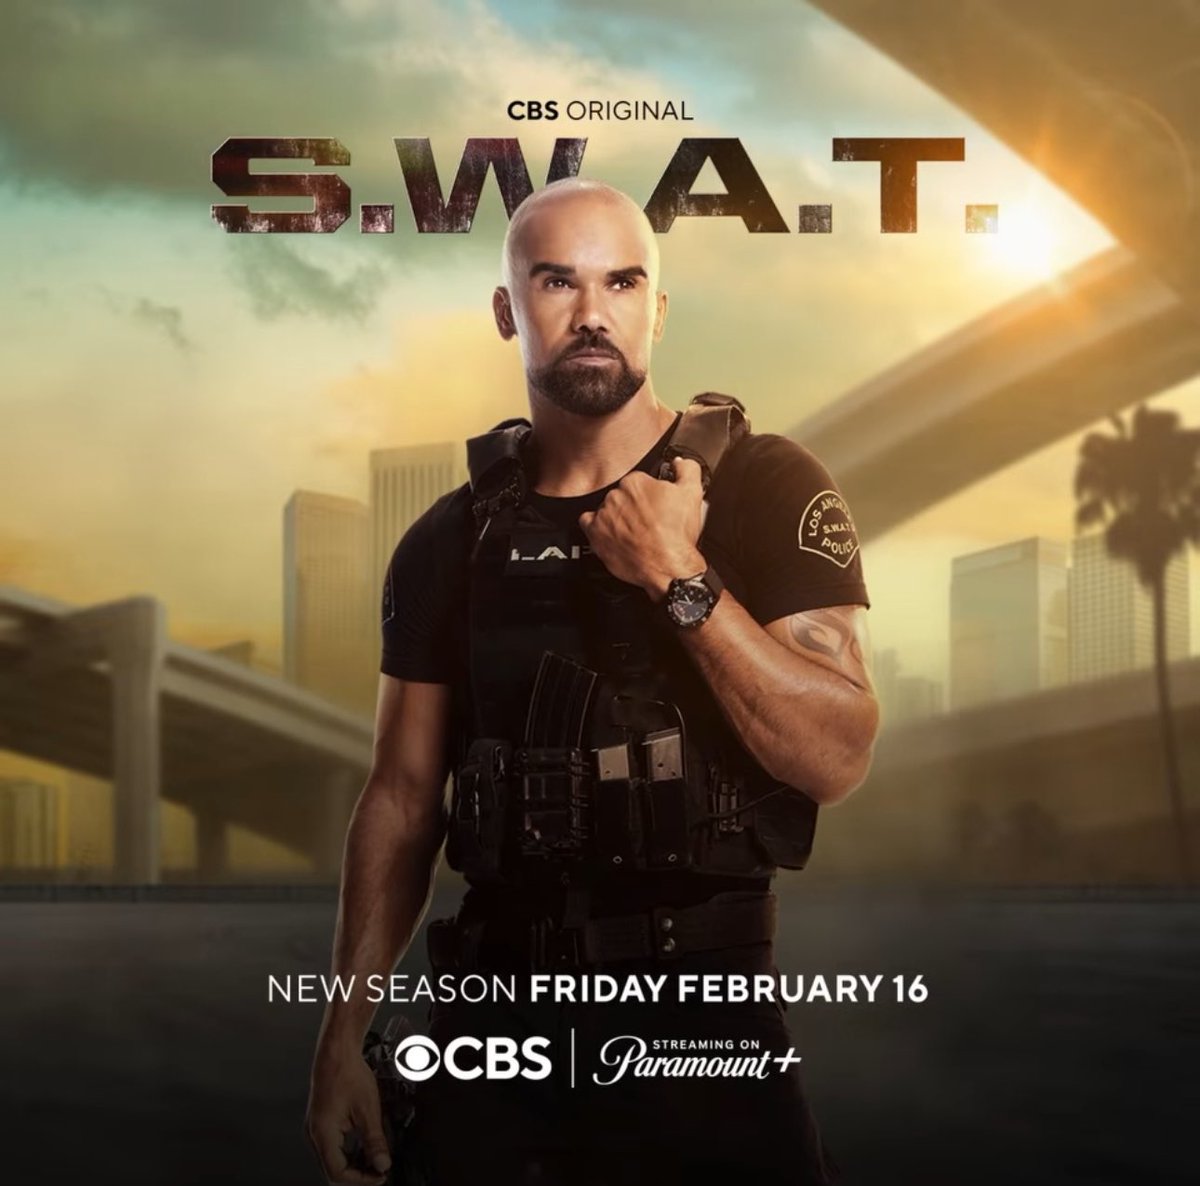 #TiempoDNews

Esta noche #CBS emite el noveno episodio de la séptima temporada de su serie #SWAT.